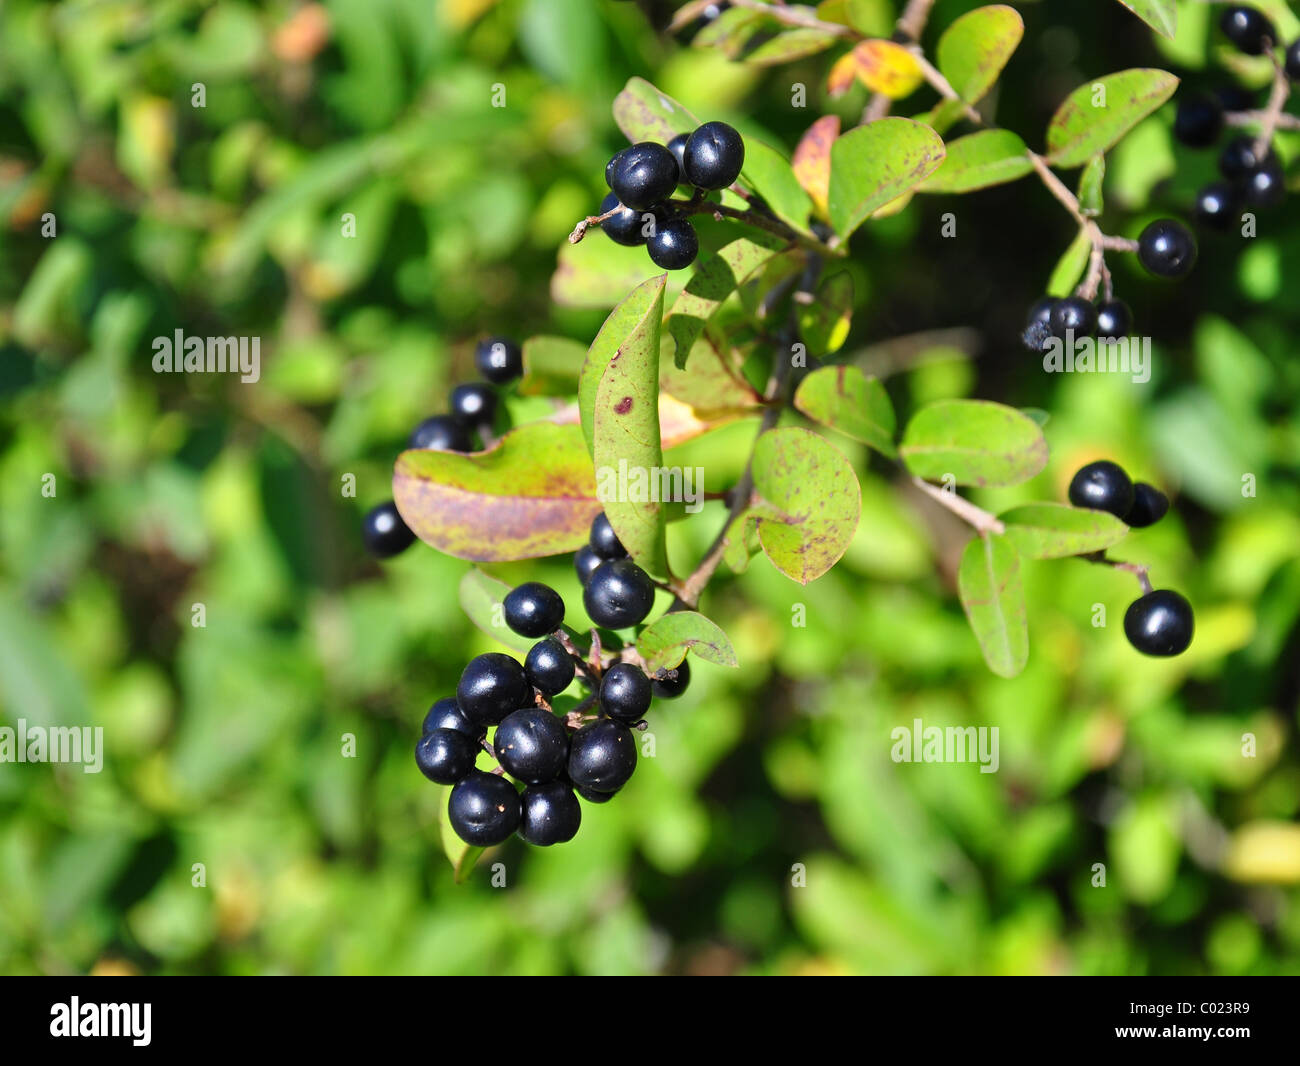 Berries of alder buckthorn (Frangula alnus) Stock Photo